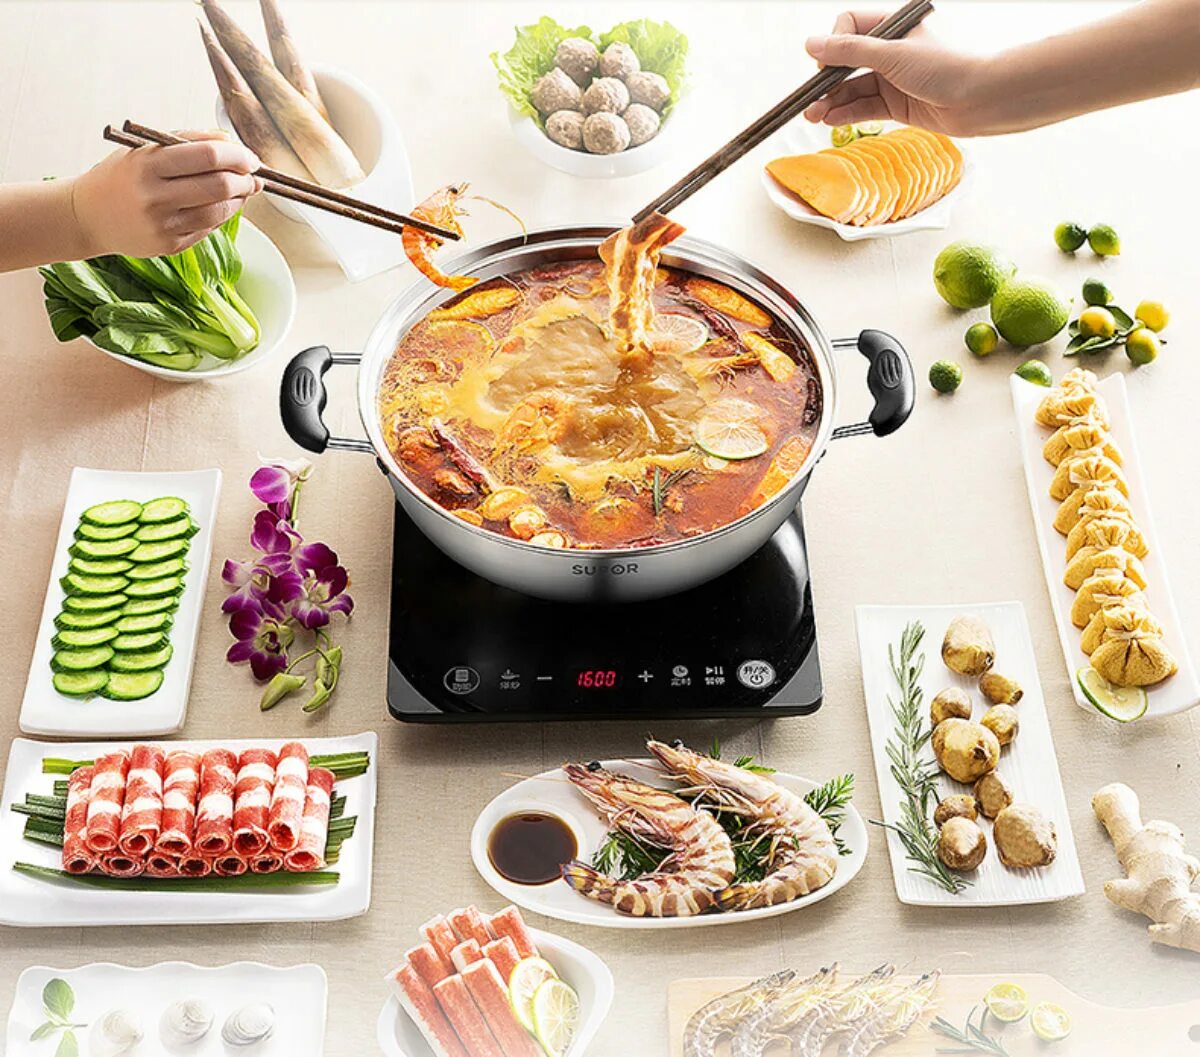 Hot Pot. Hot Pot кастрюля. Кастрюля Zhiwu Cooking Mandarin Duck Pot (for Mijia Induction Cooker). Hot Pot хозяйка. Hot cooking